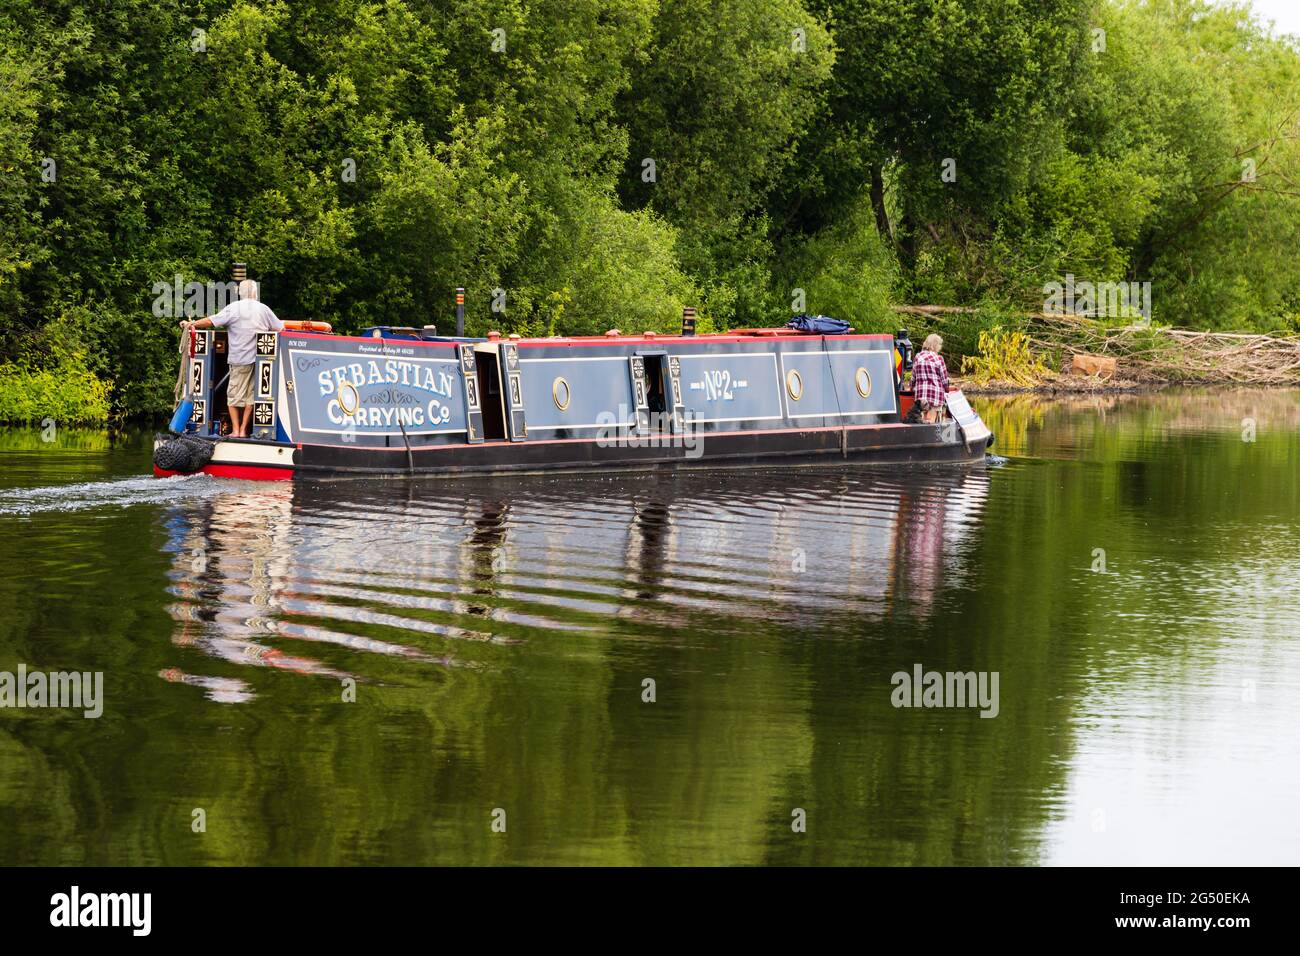 Ein Kanalkahn, der als Sebastian Carrying Co gekennzeichnet ist, fährt entlang des Flusses Trent in Farndon, in der Nähe von Newark, Nottinghamshire, England. Stockfoto